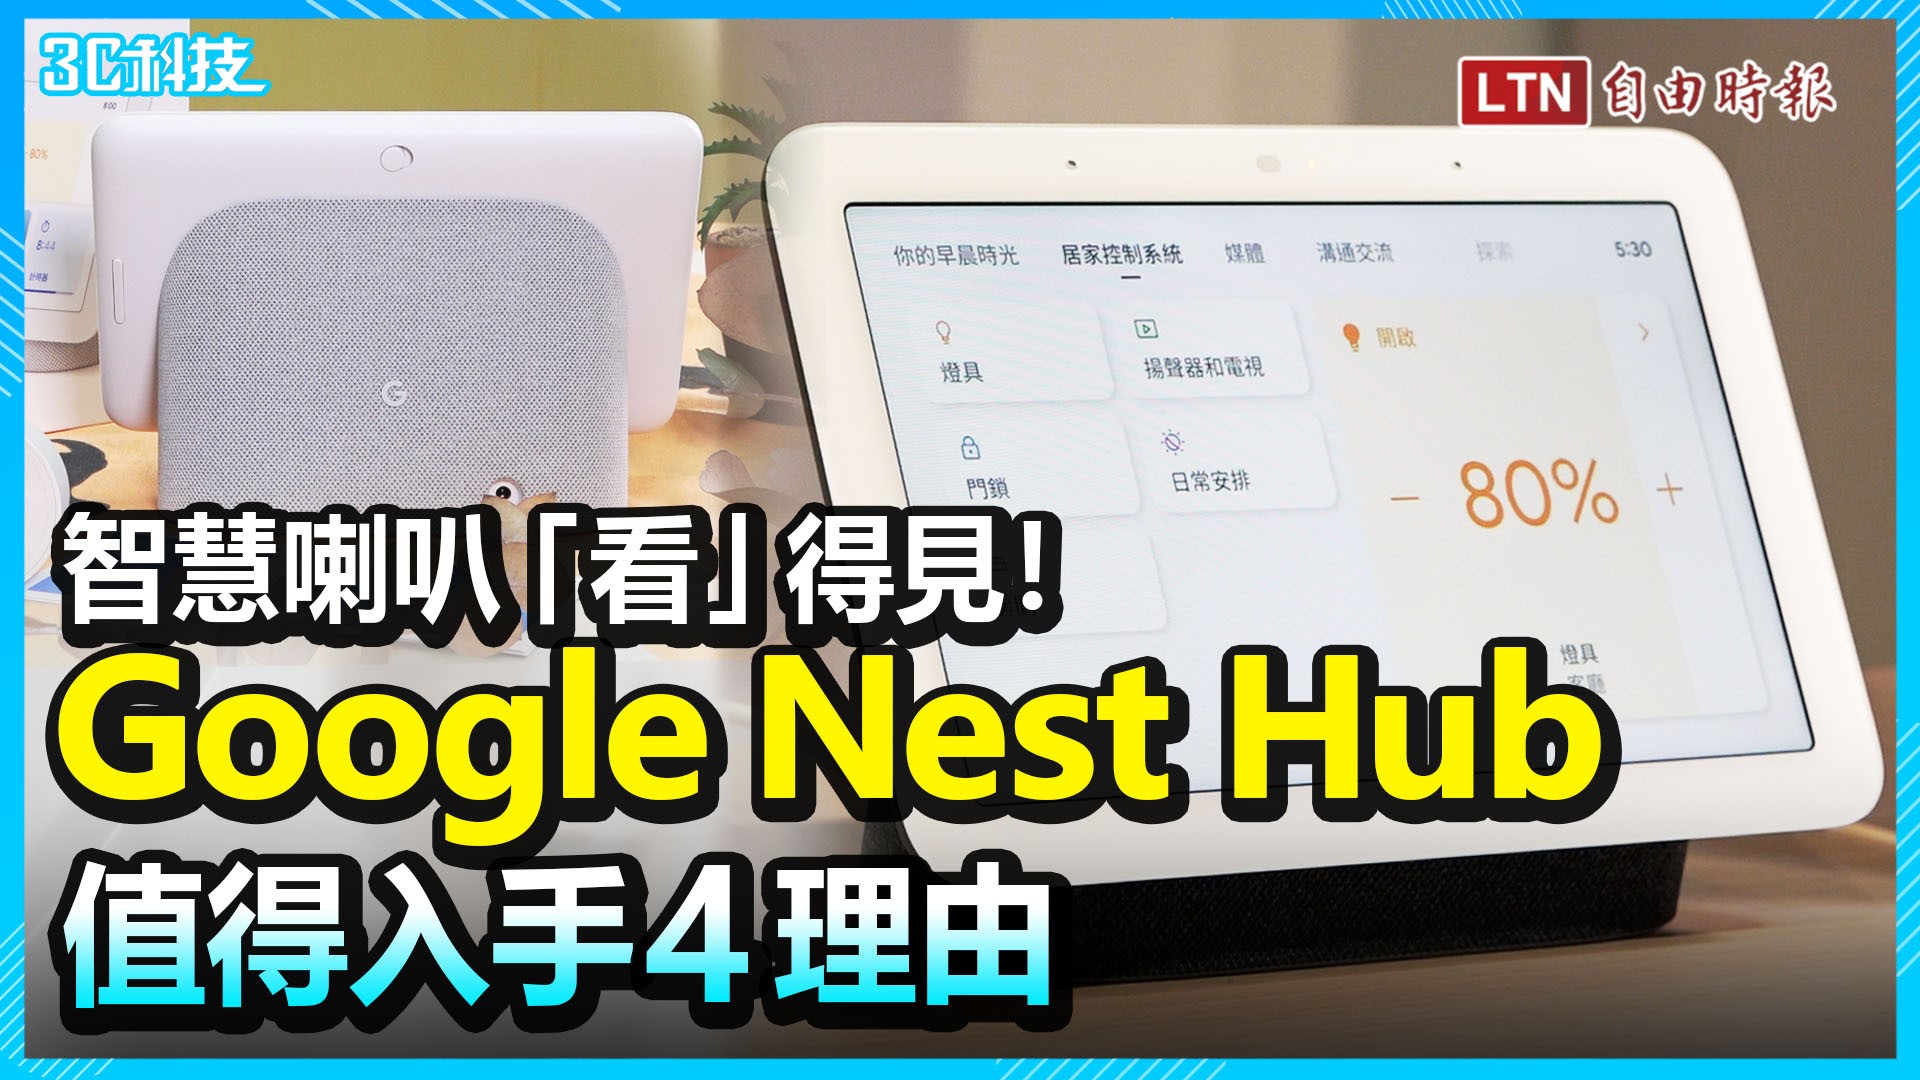 Google Nest Hub 螢幕智慧喇叭「看」得見！開箱實測值得入手4理由